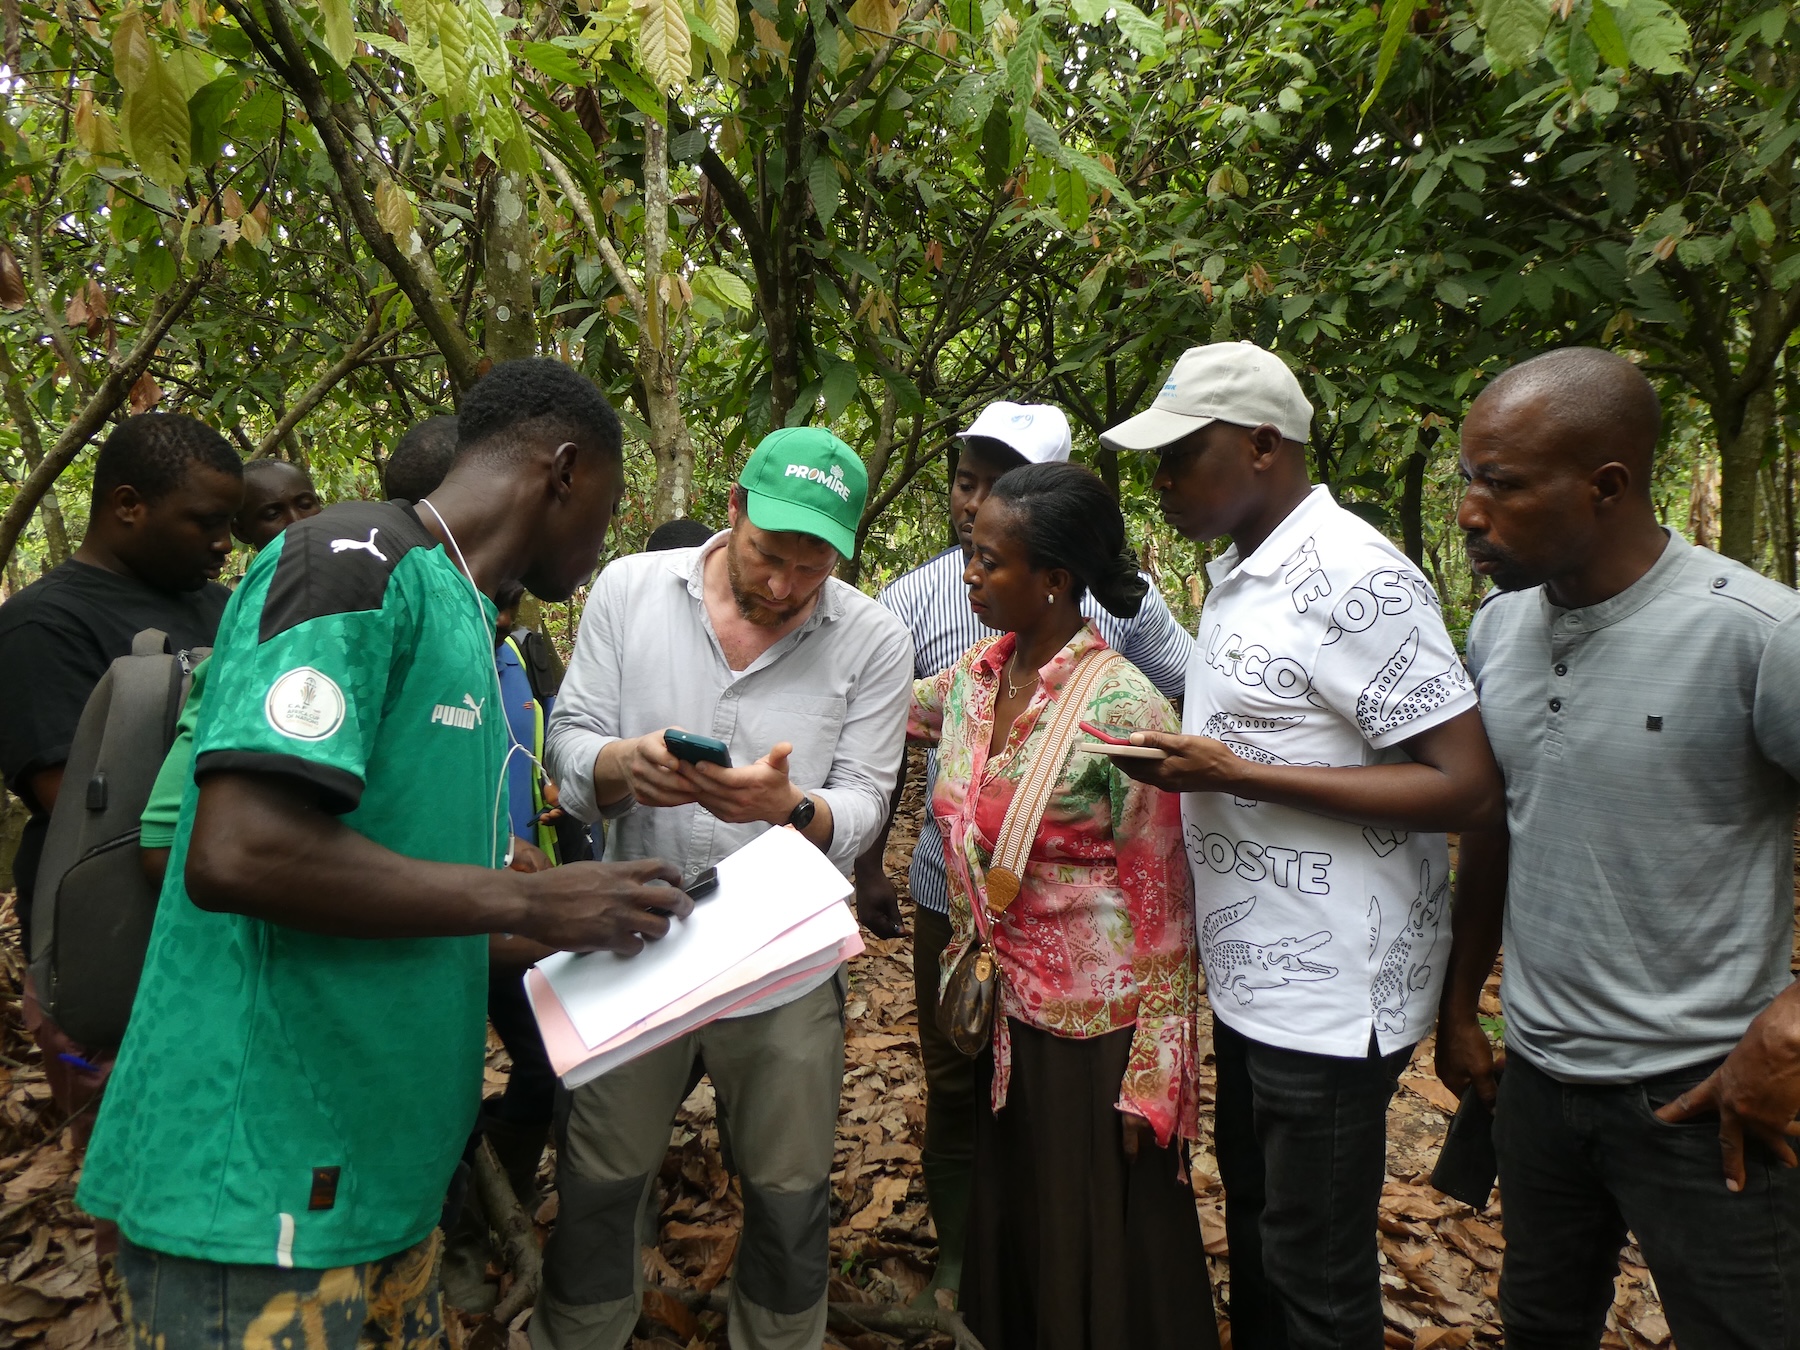 La Alianza de Datos Forestales fortalece la colaboración y la aplicación en torno al monitoreo global de la deforestación impulsada por productos básicos, la degradación forestal y los esfuerzos de restauración en todo el mundo.